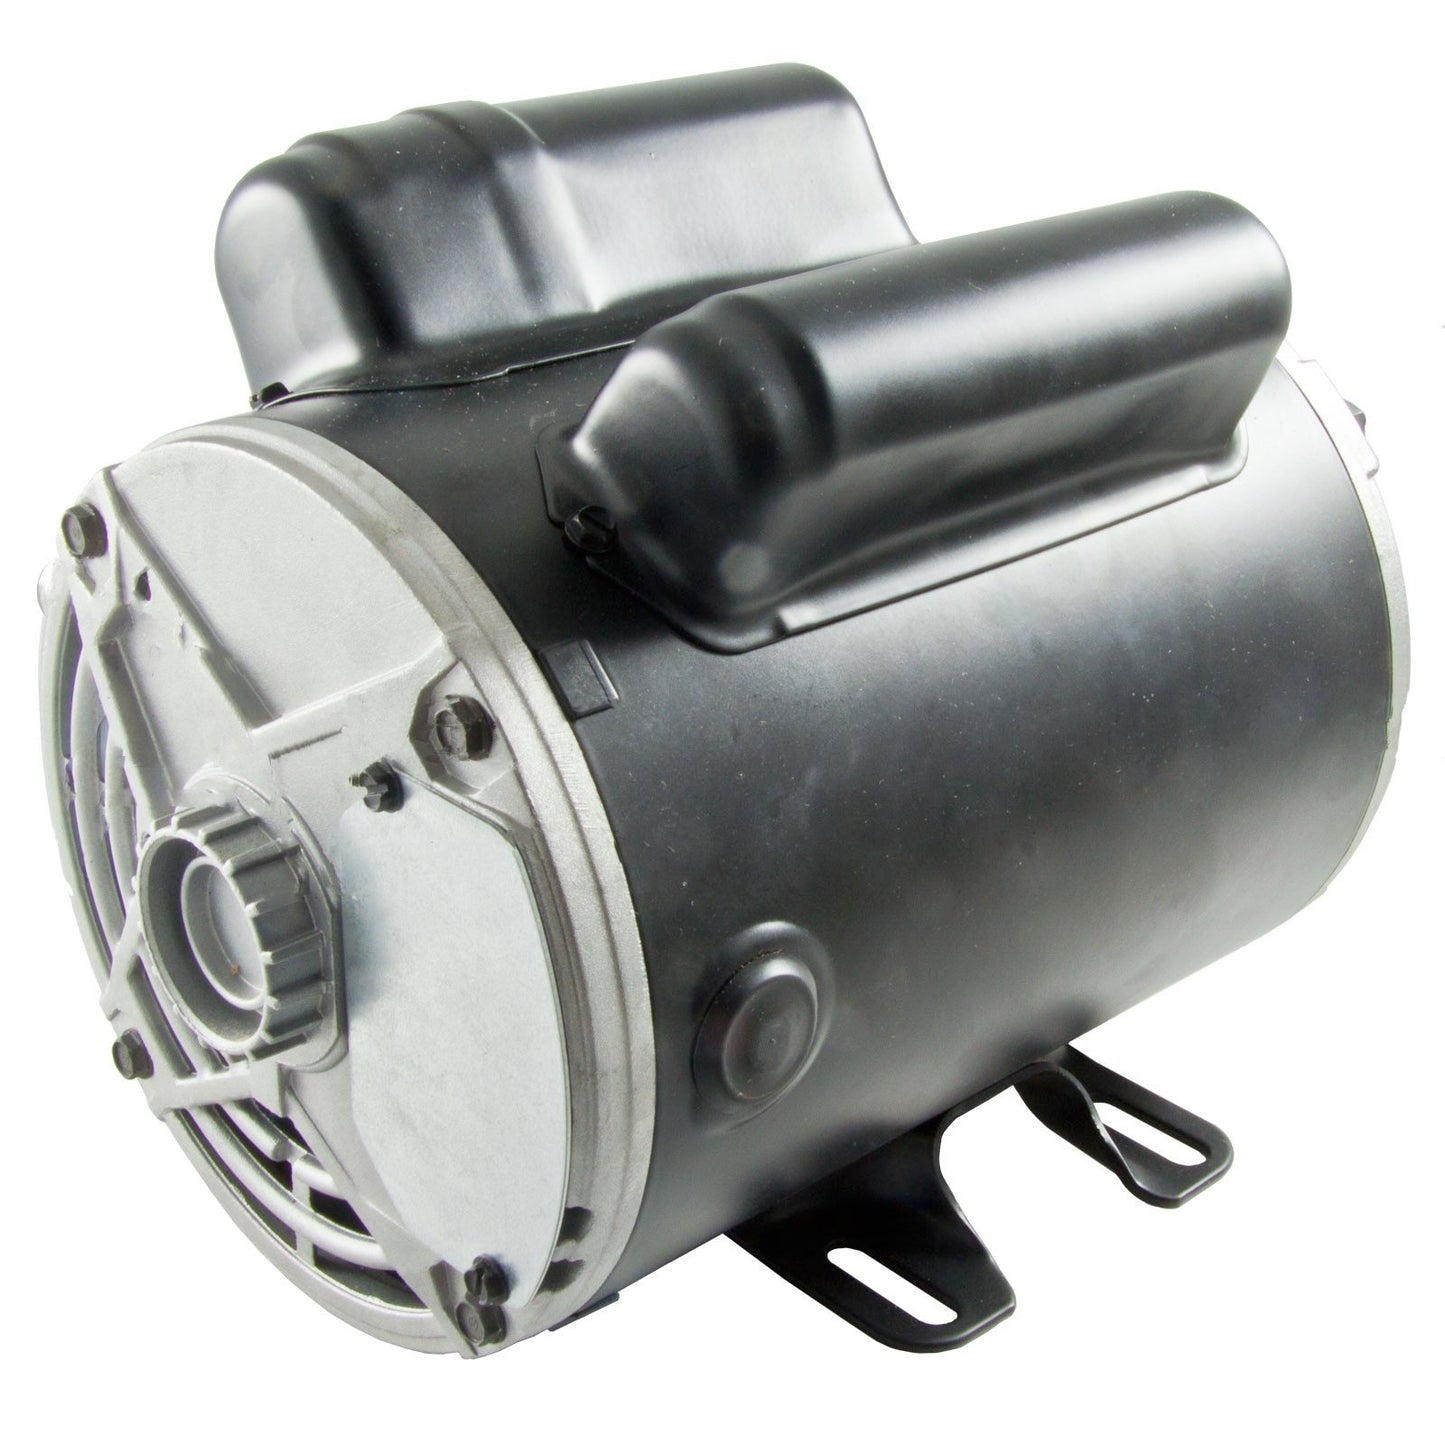 Motor For Air Compressor EM05.0-36-10SPL